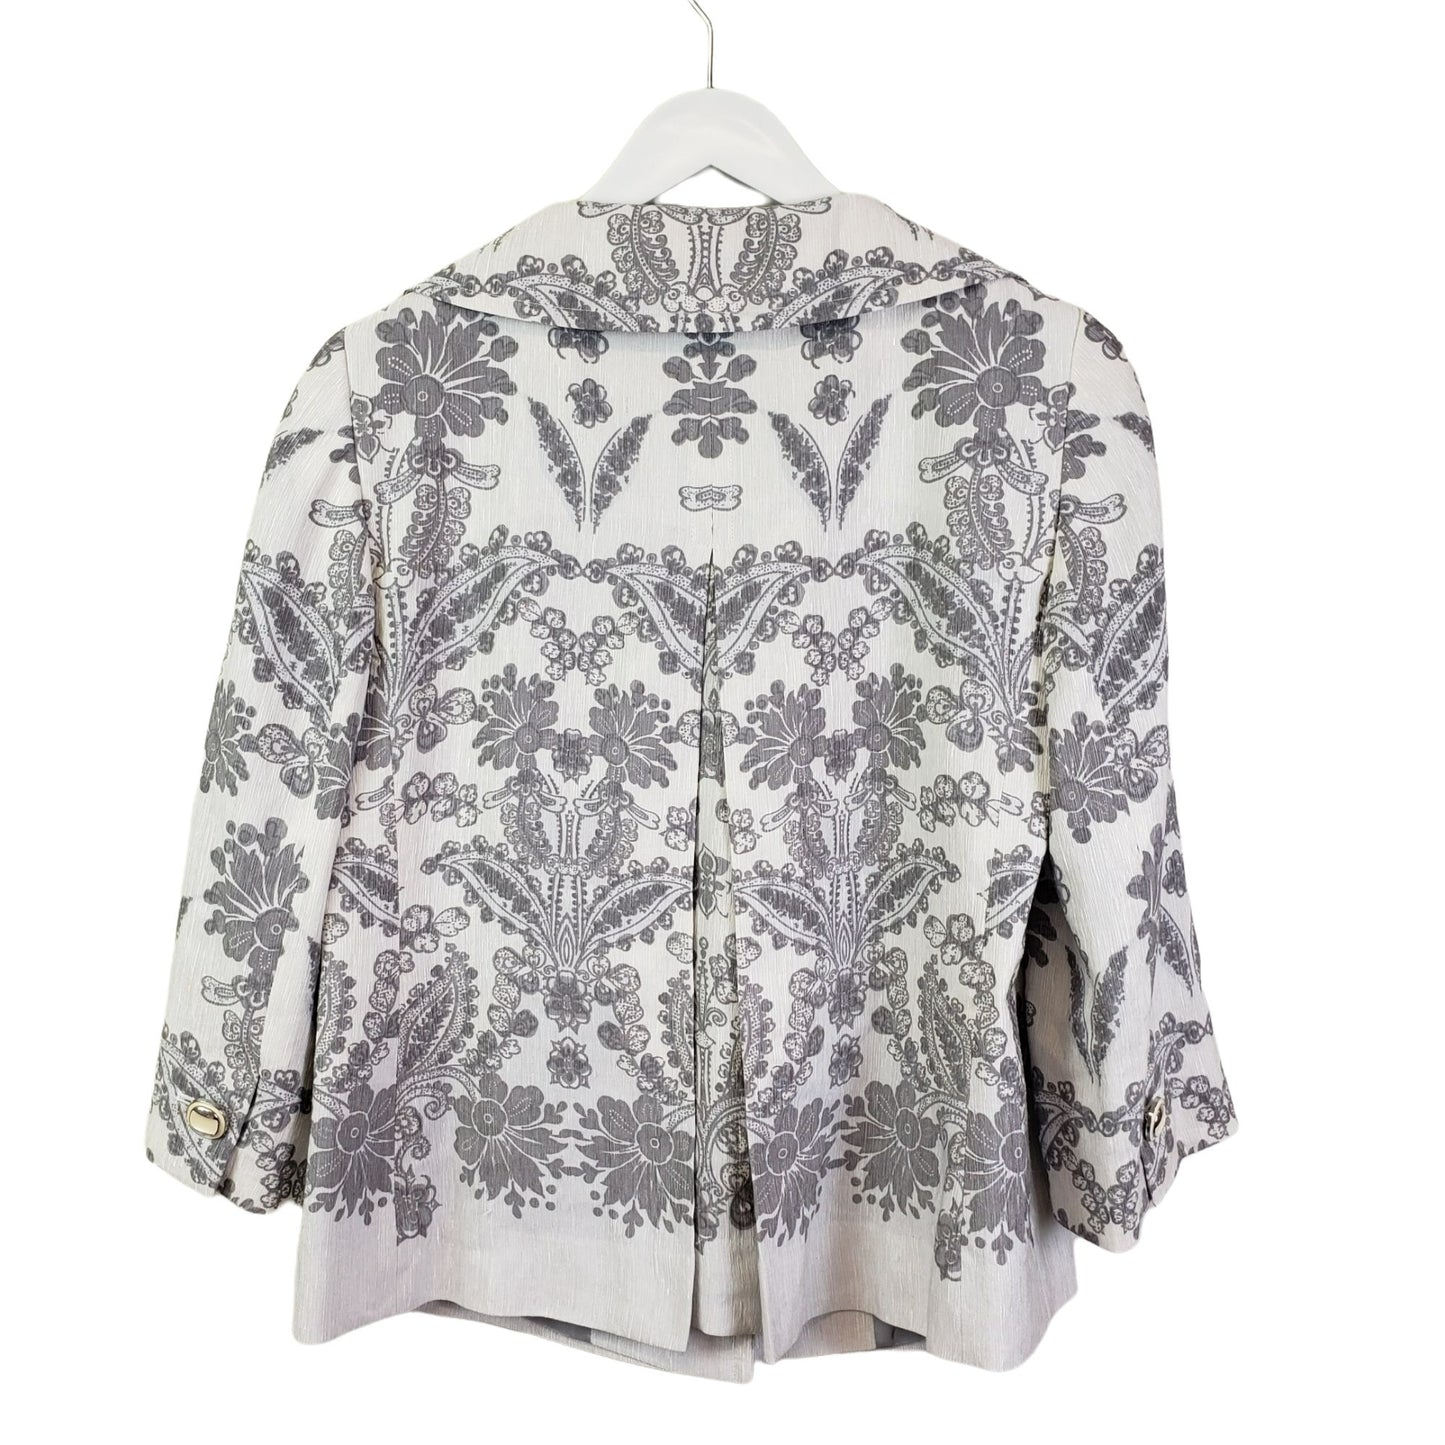 Loft Floral & Paisley Print Blazer Jacket Size 2